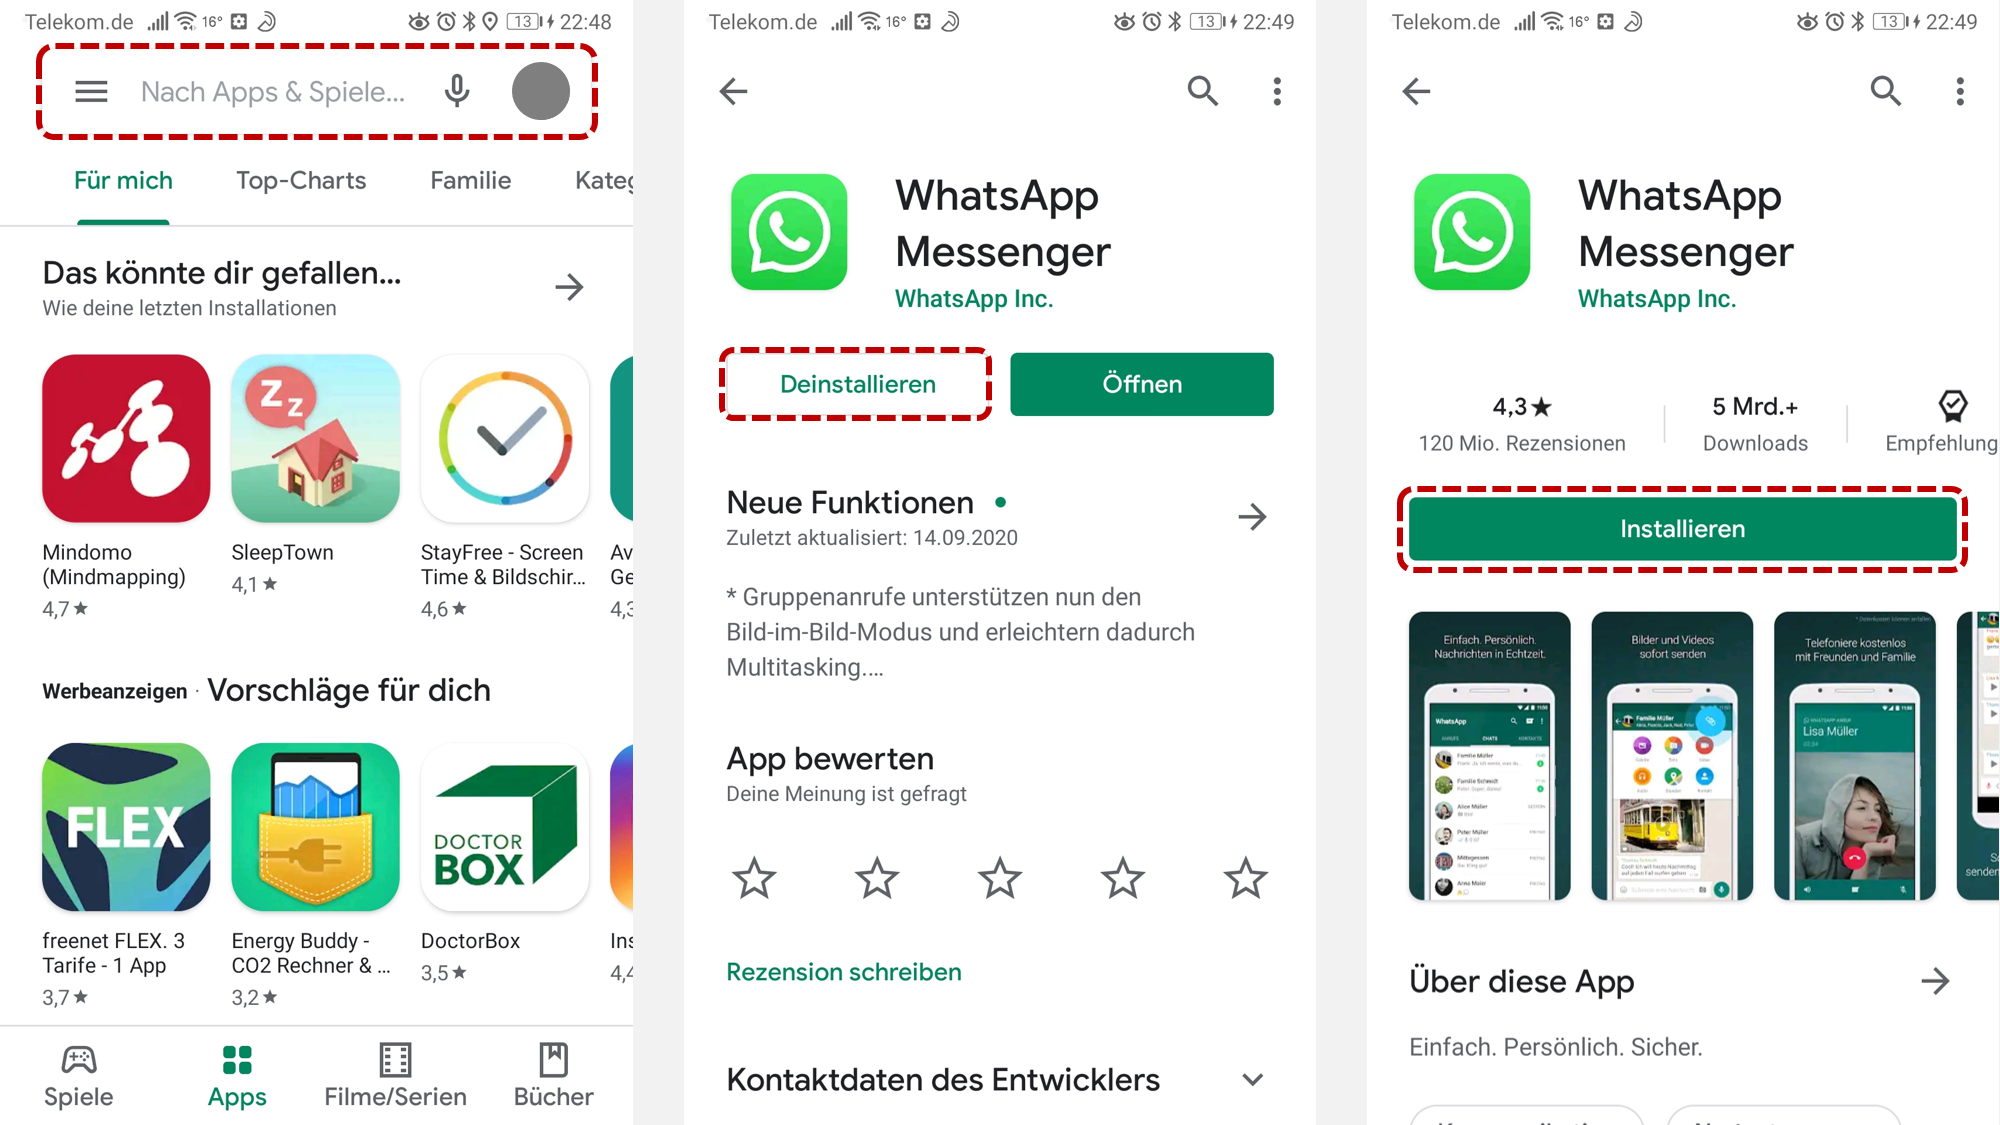 Tippen Sie auf WhatsApp, um die App-Seite zu öffnen.
Tappen Sie auf Installieren, um WhatsApp erneut zu installieren.